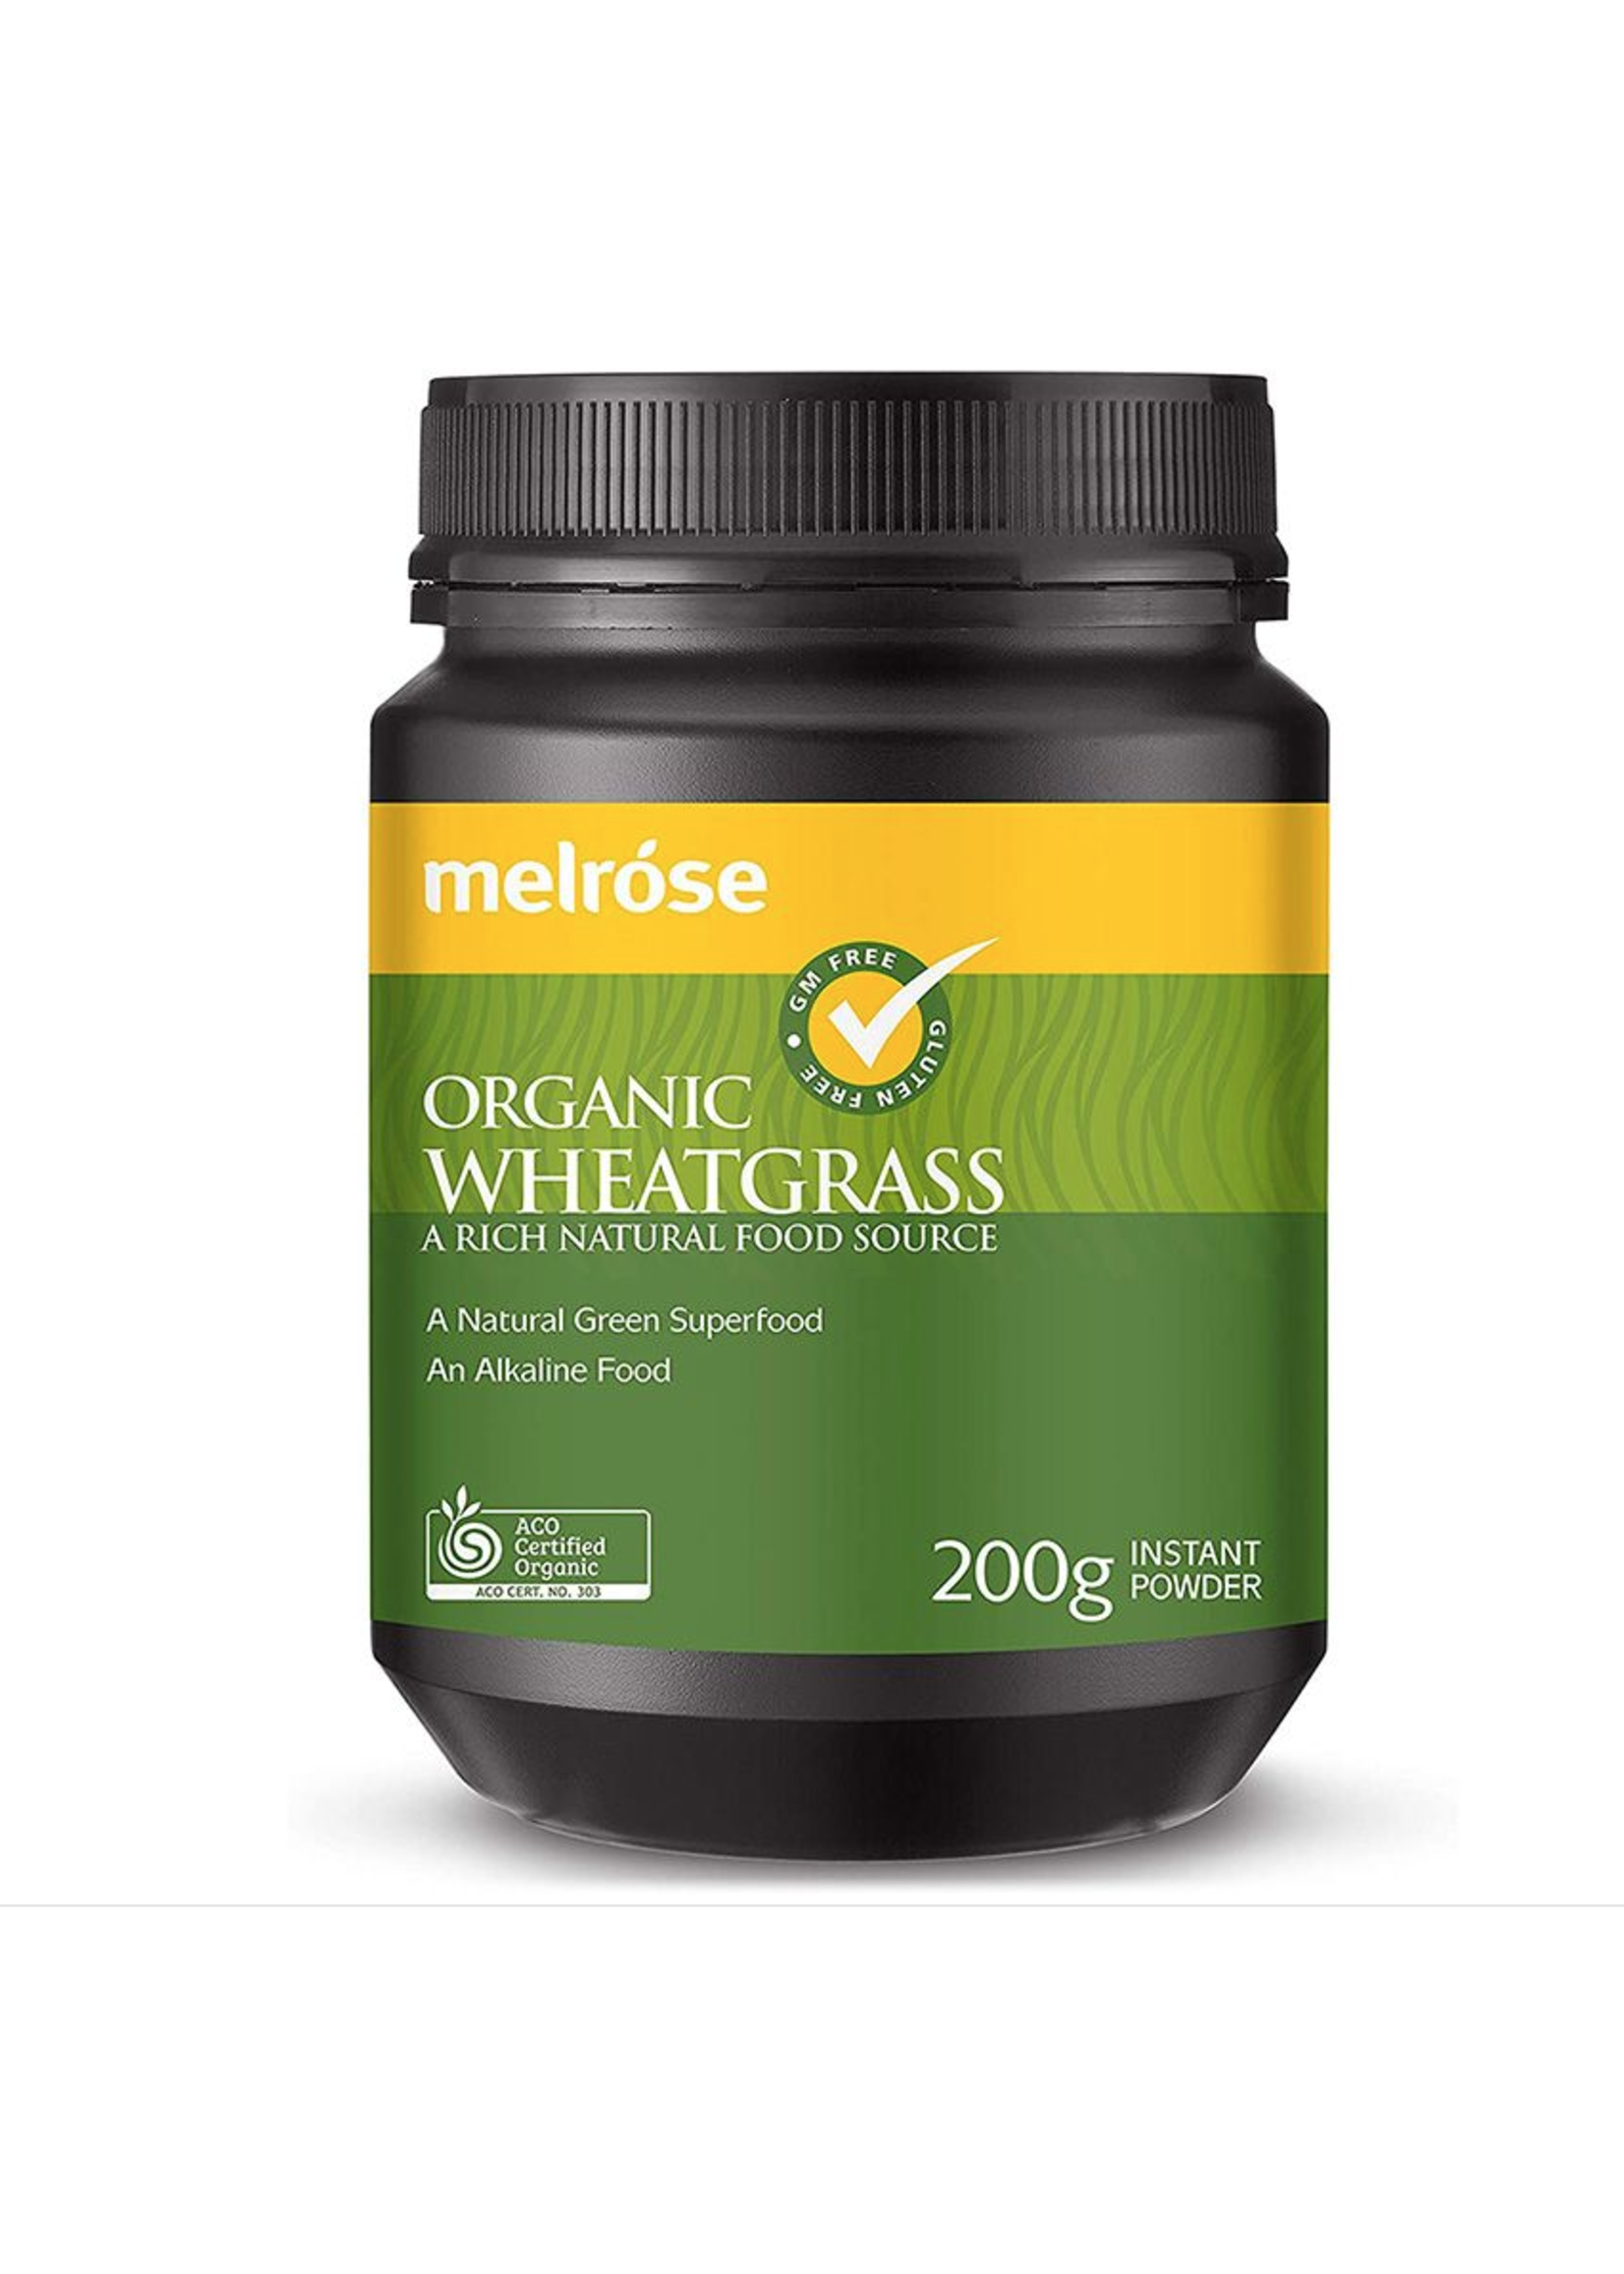 MELROSE Melrose Organic Wheatgrass Powder 200g